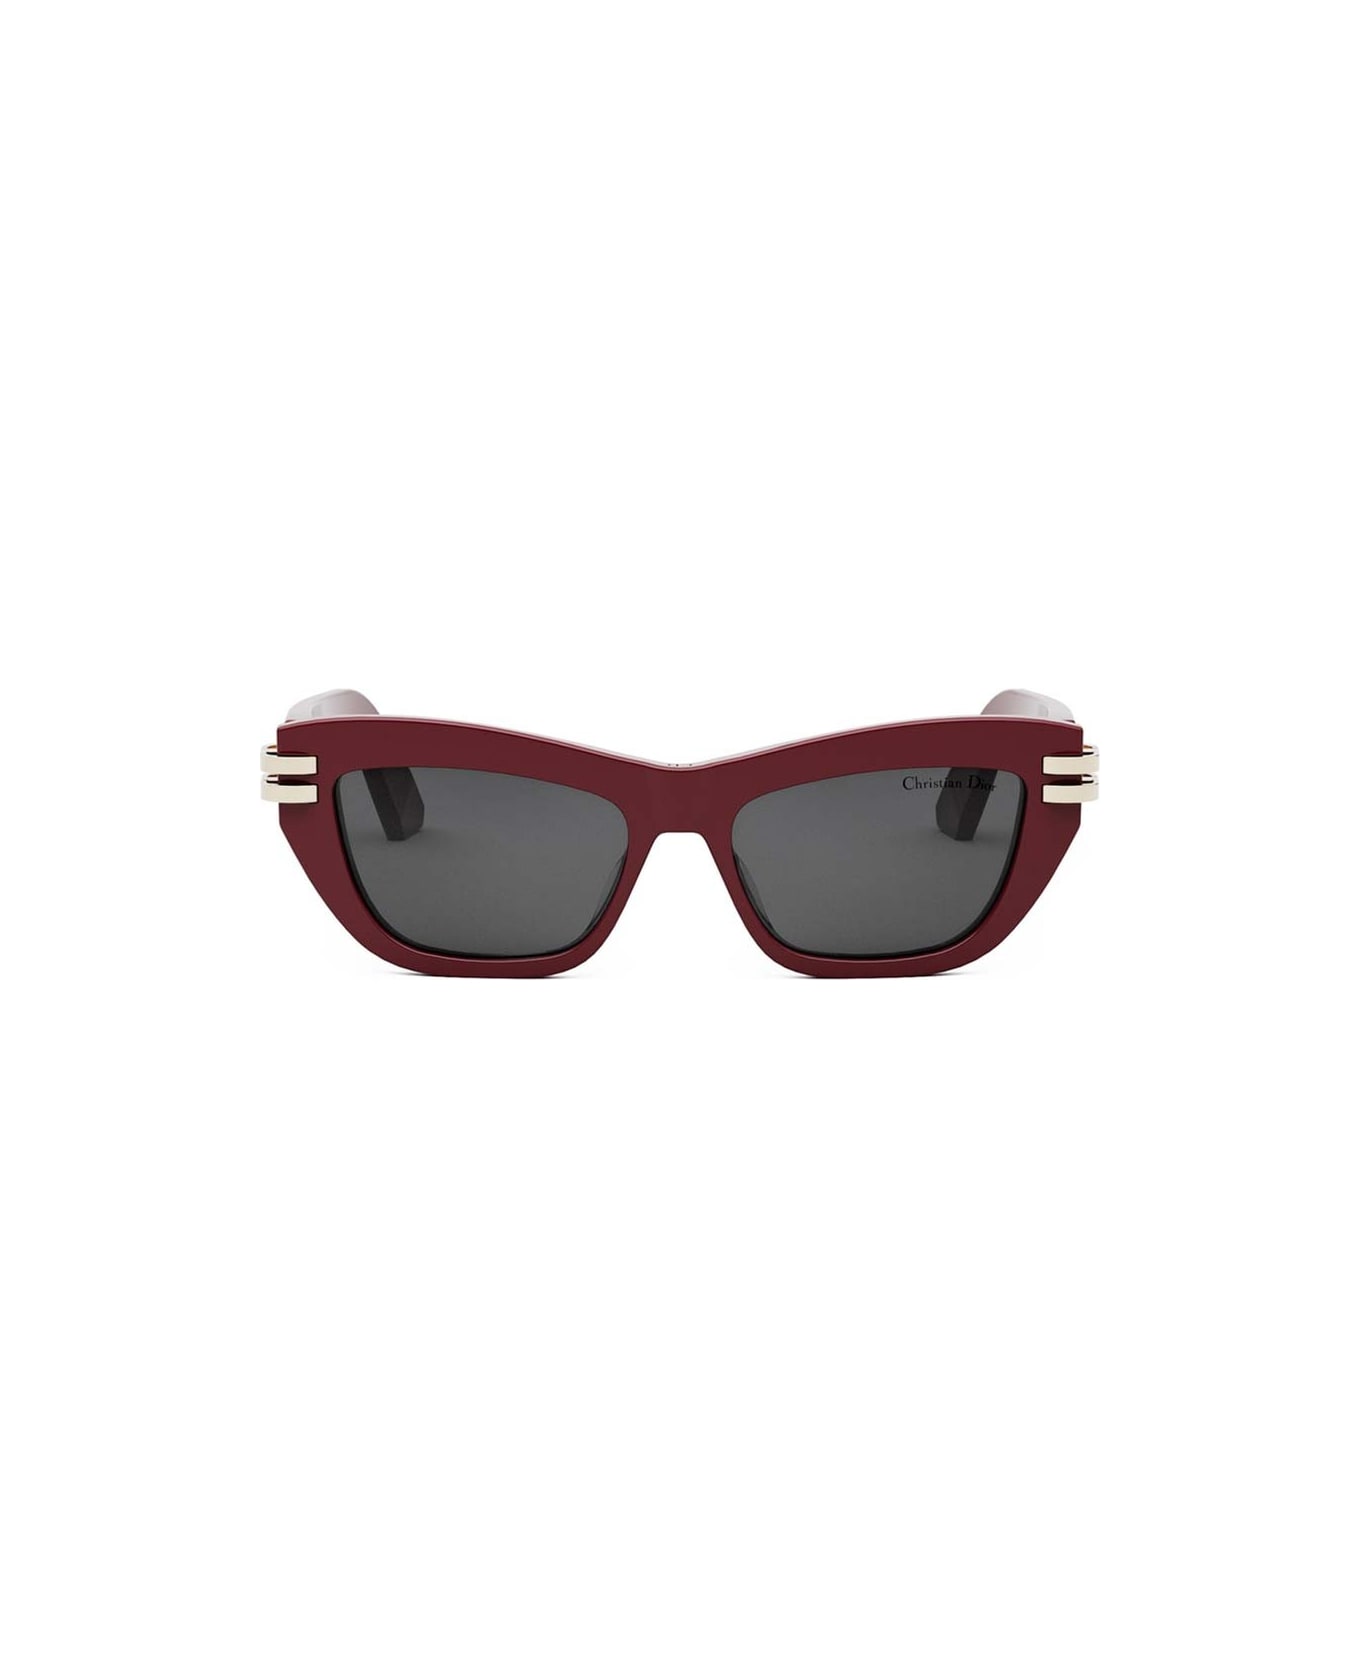 Dior Eyewear Sunglasses - Rosso/Grigio サングラス